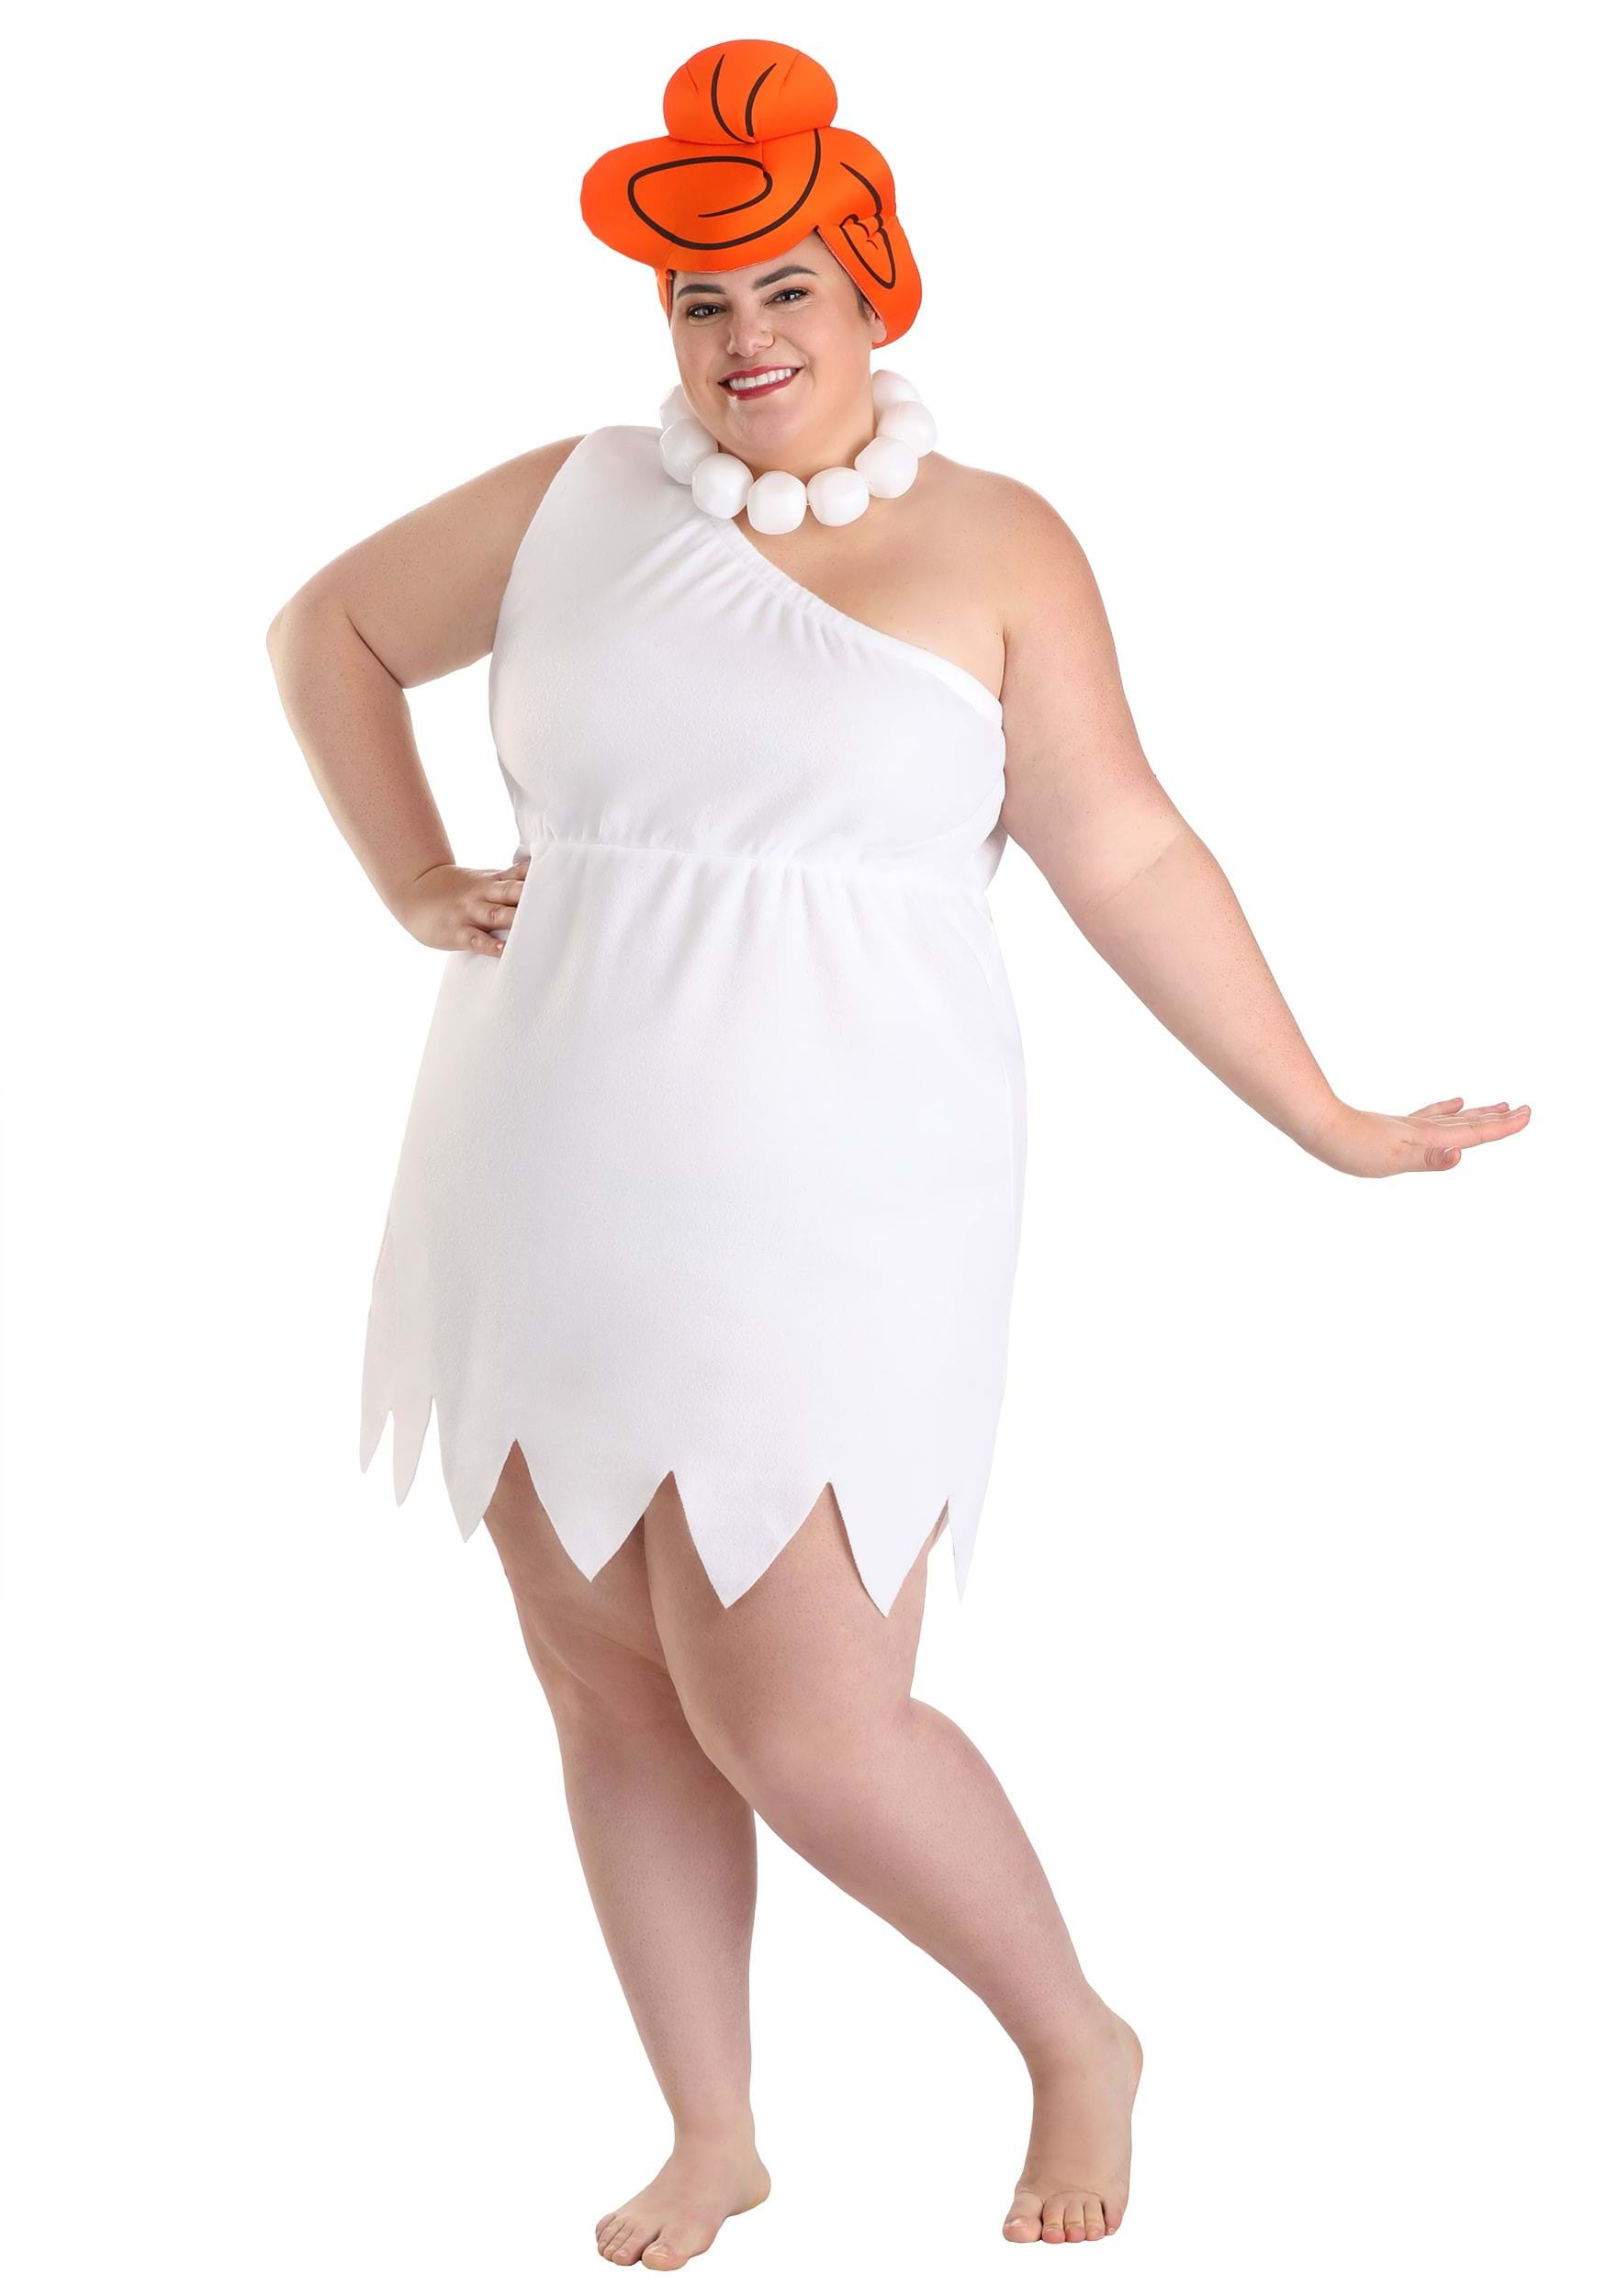 Women's Plus Size Wilma Flintstone Fancy Dress Costume , Cartoon Character Fancy Dress Costumes